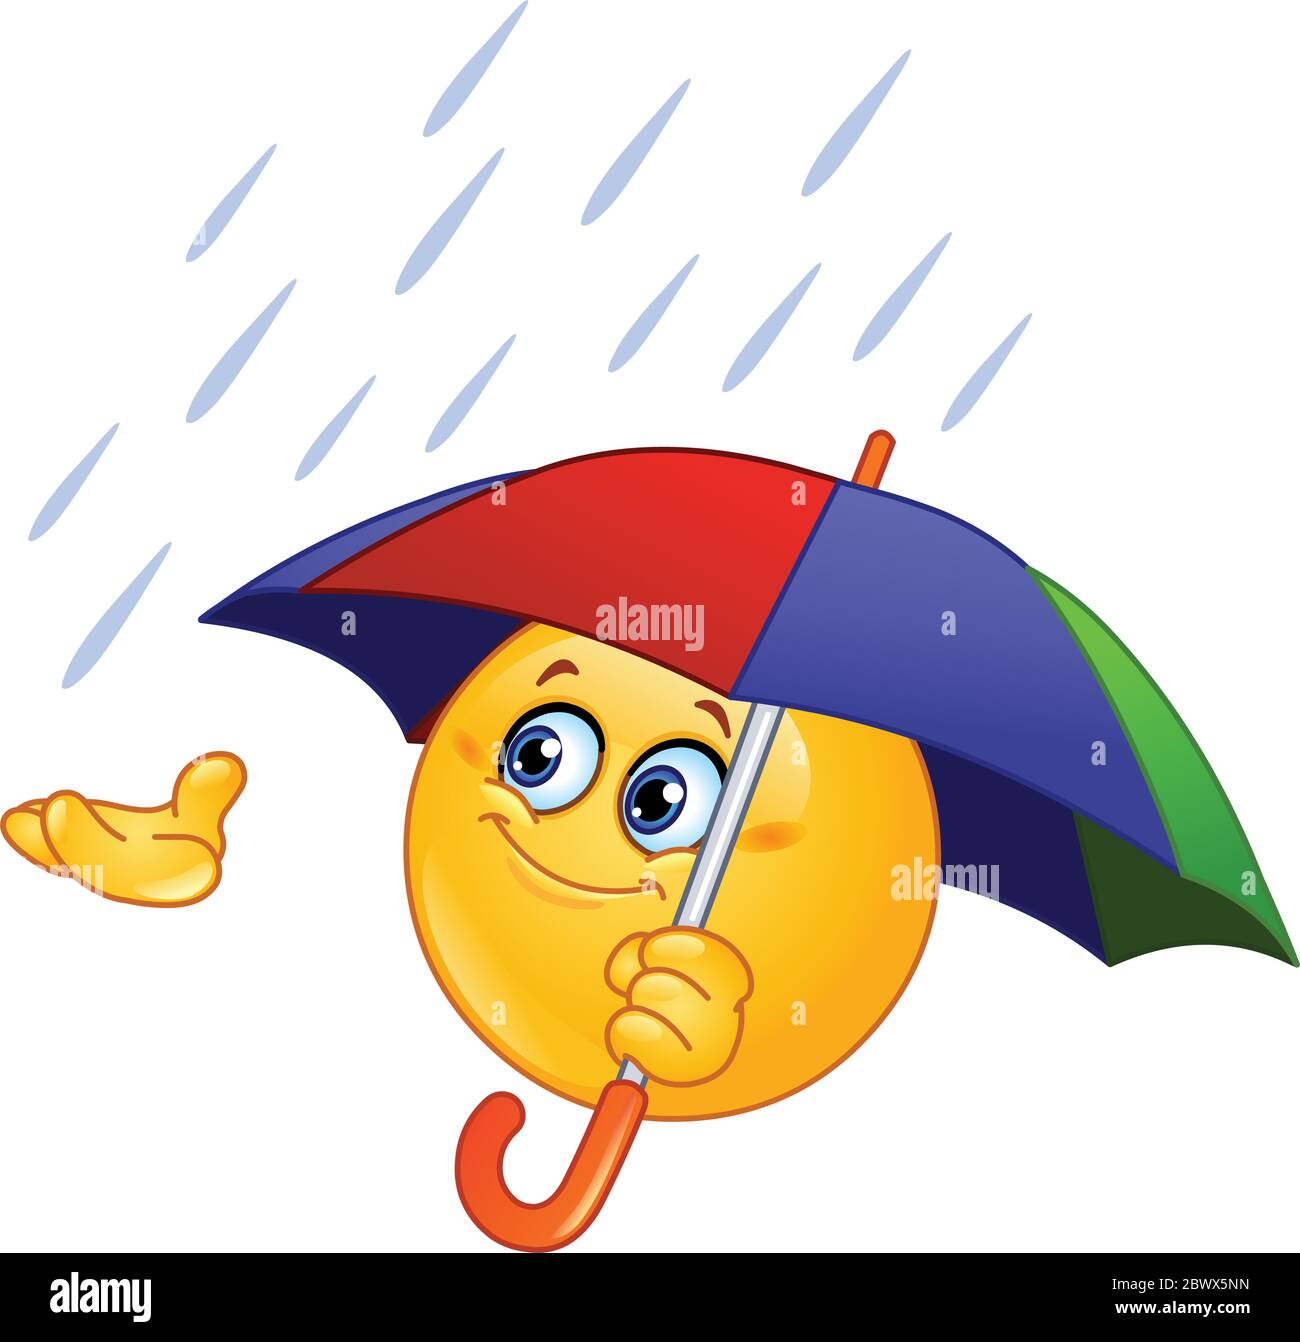 Emoticon holding an umbrella Stock Vector